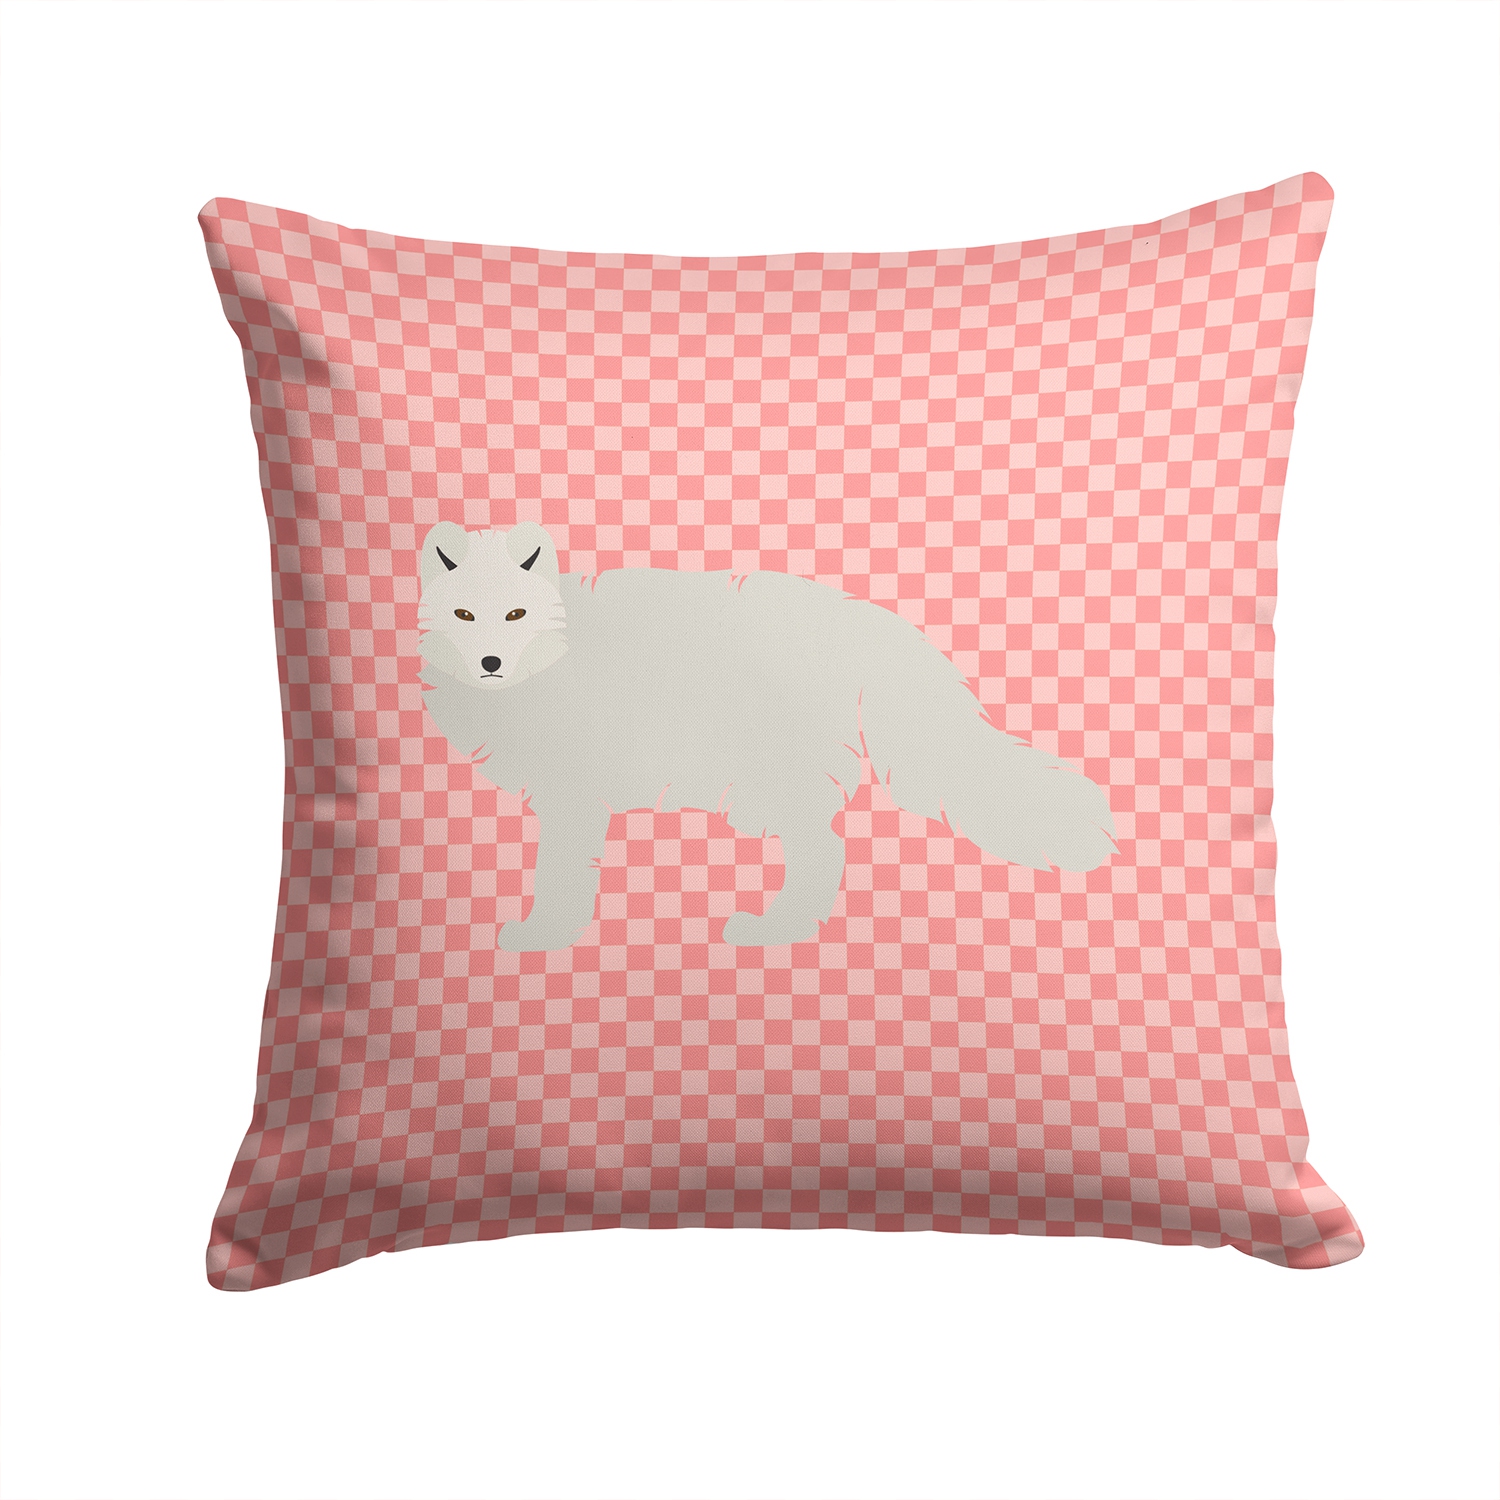 Caroline's Treasures BB7877PW1414 White Arctic Fox Pink Check Fabric Decorative Pillow, 14Hx14W, multicolor